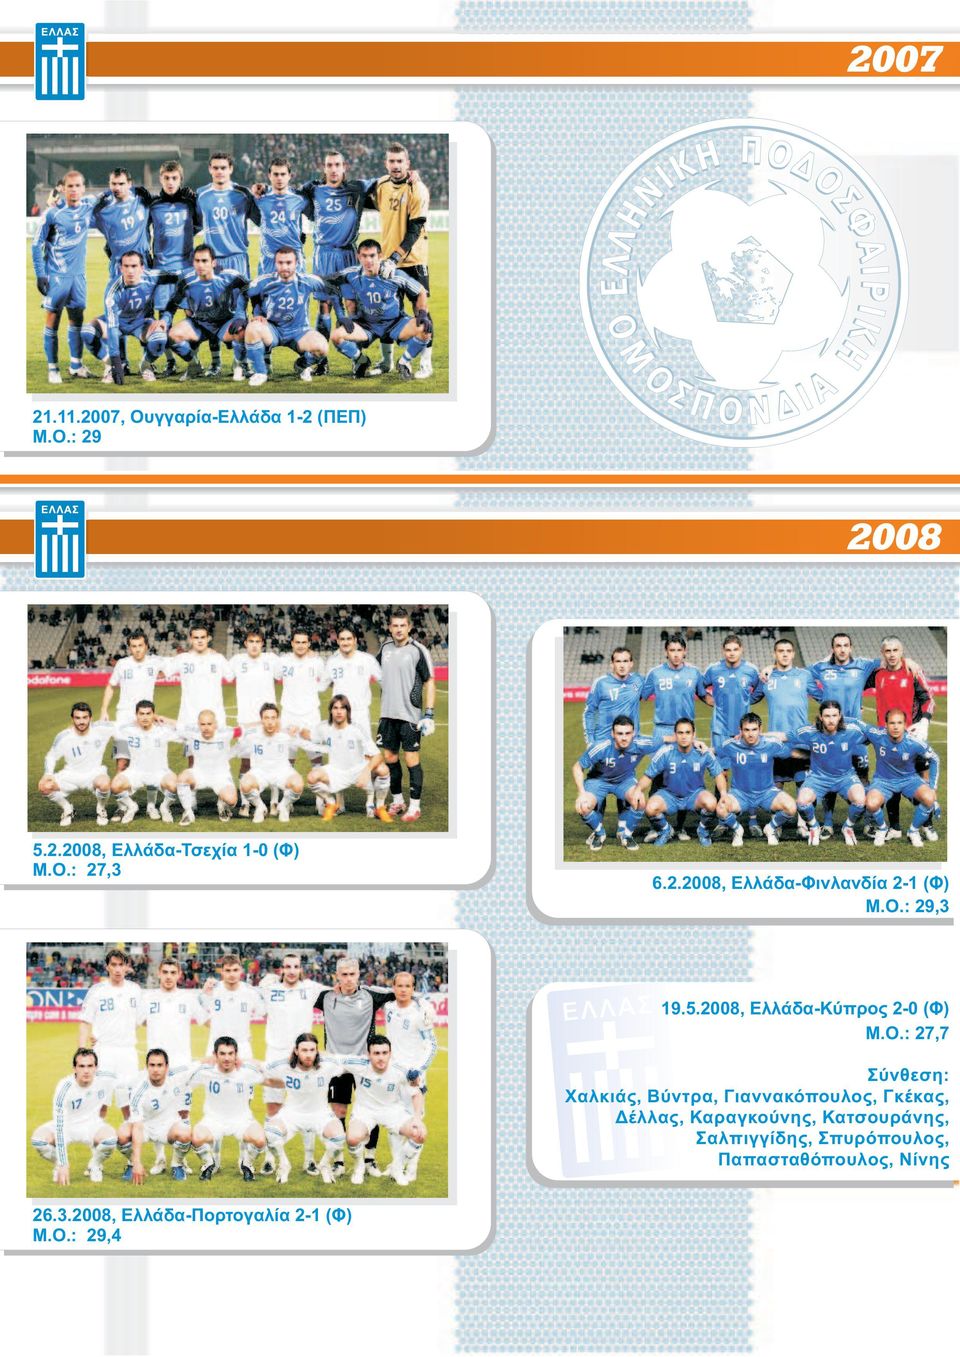 2008, Ελλάδα-Κύπρος 2-0 (Φ) Μ.O.